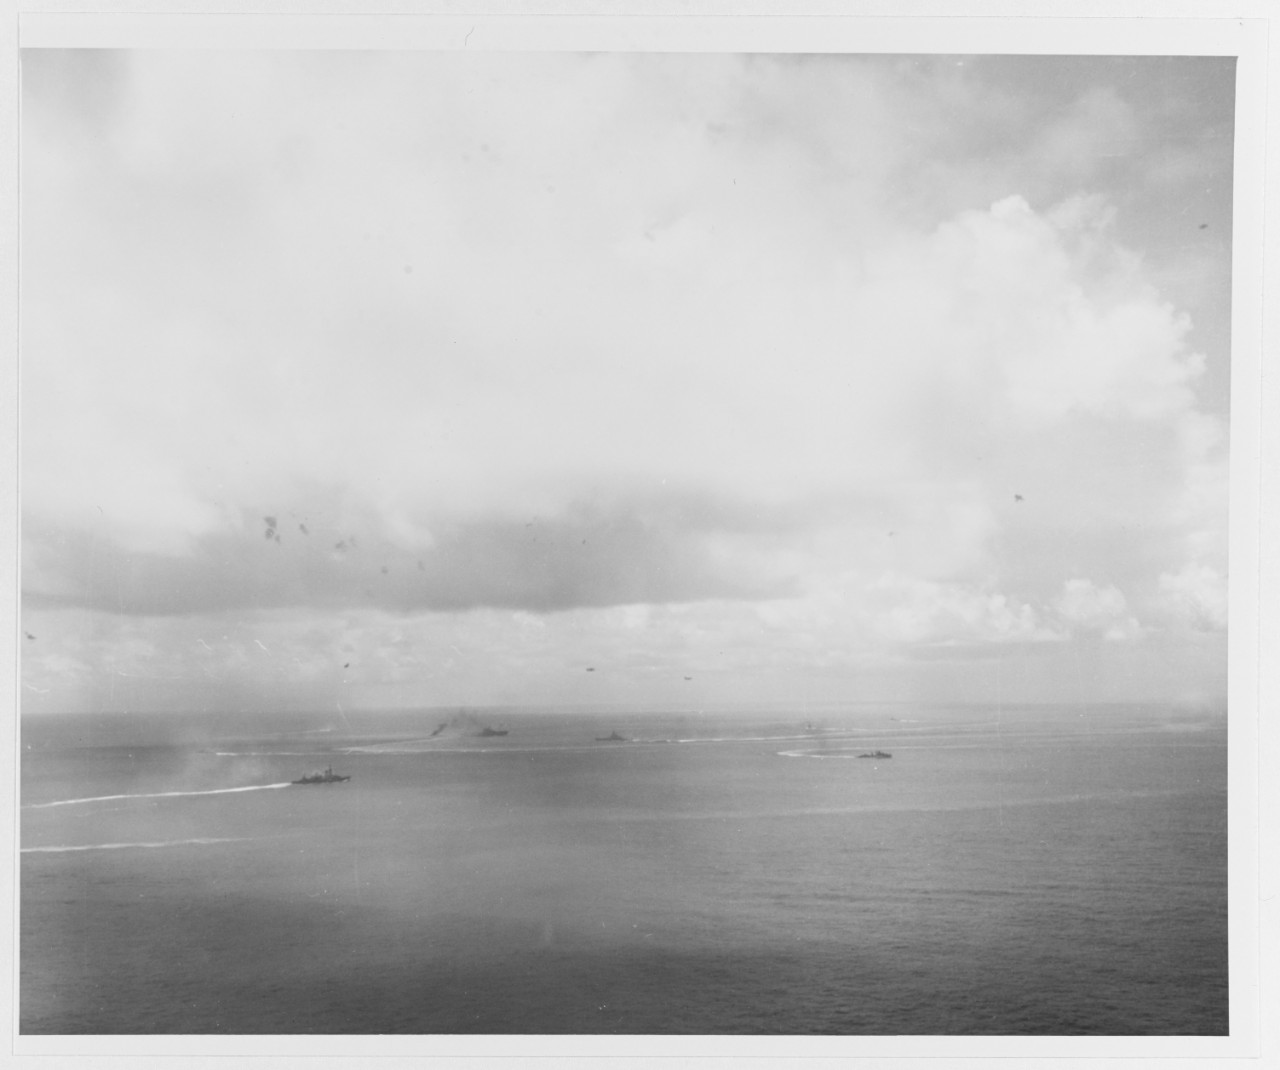 Battle of the Santa Cruz Islands